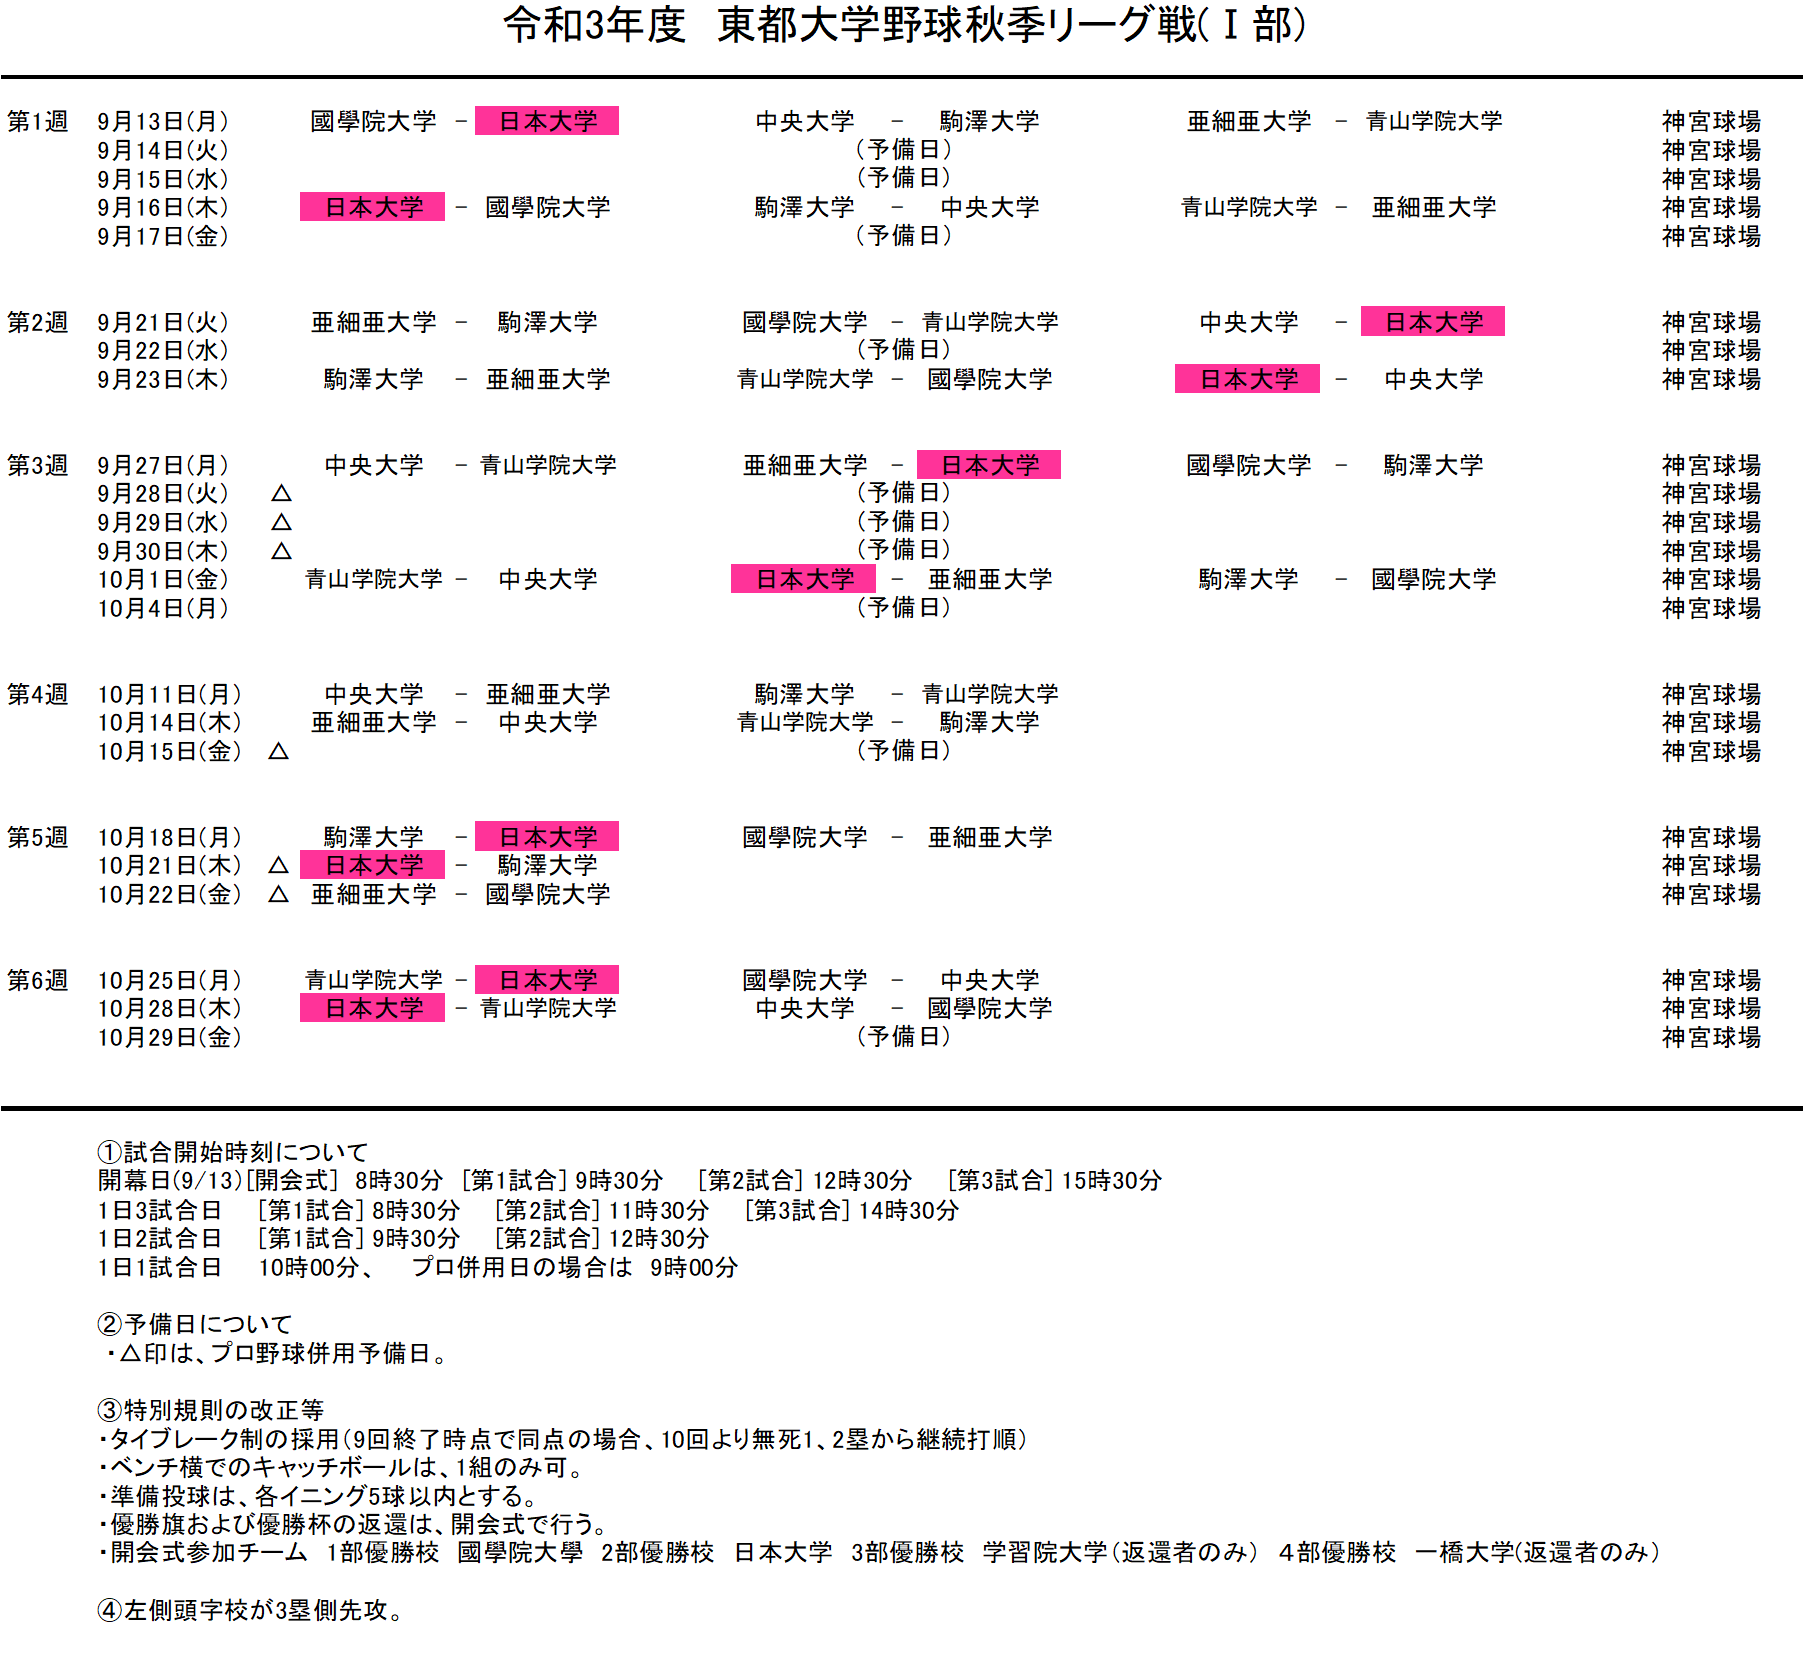 令和3年度 秋季リーグ戦 日程表 改訂版 日本大学野球部